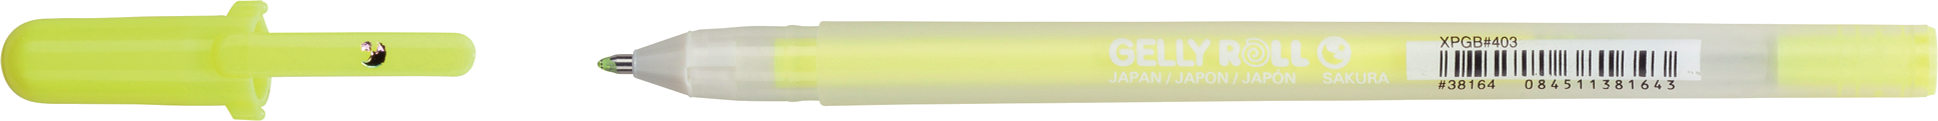 SAKURA Gelly Roll 0.5mm XPGB403 Moonlight Fluo gelb